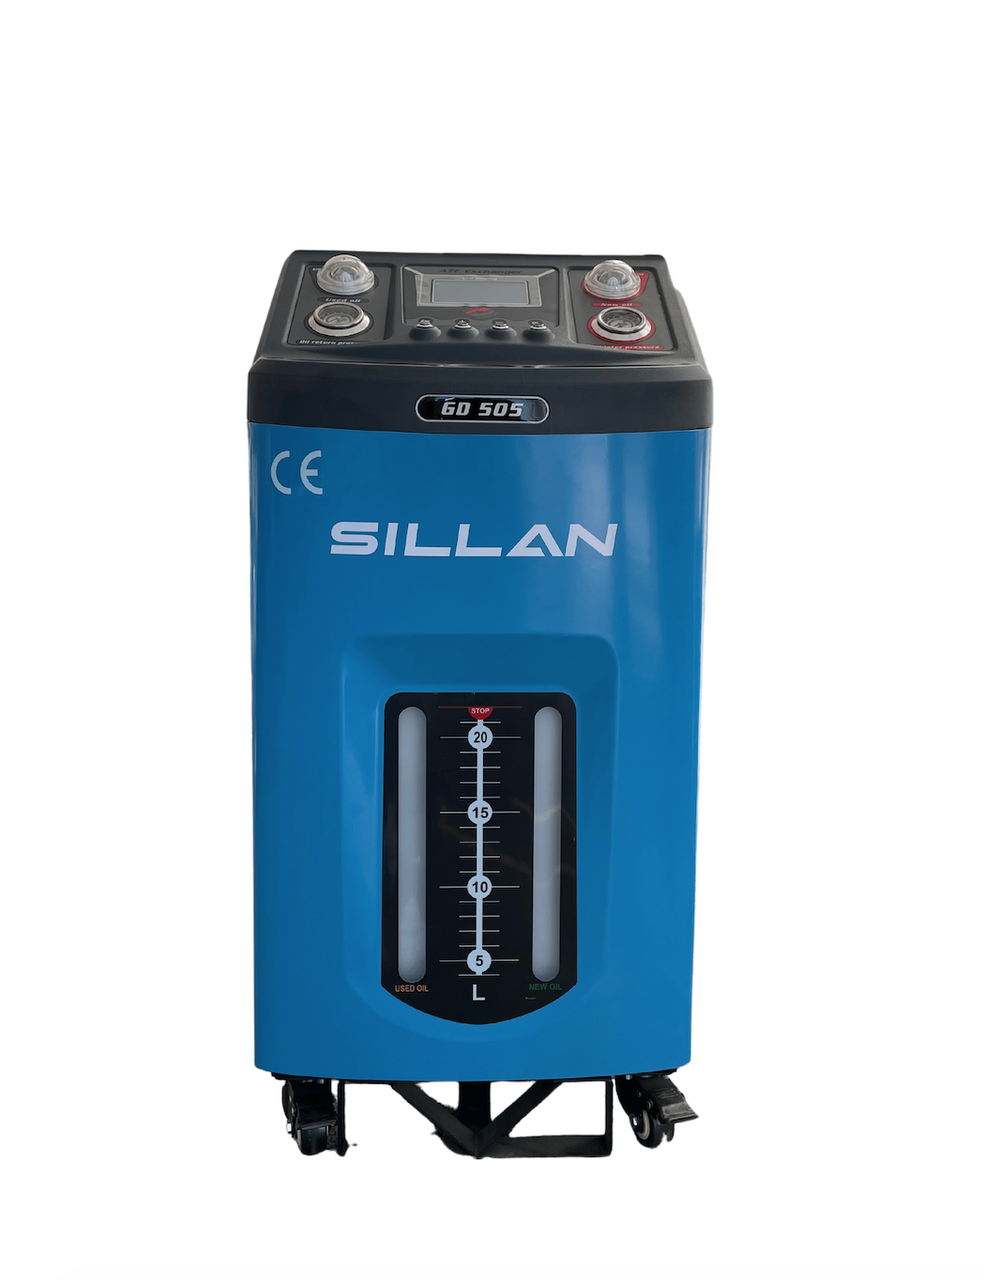 Автоматическая установка для замены жидкости в АКПП GD-505 Sillan c дисплеем, фото 1